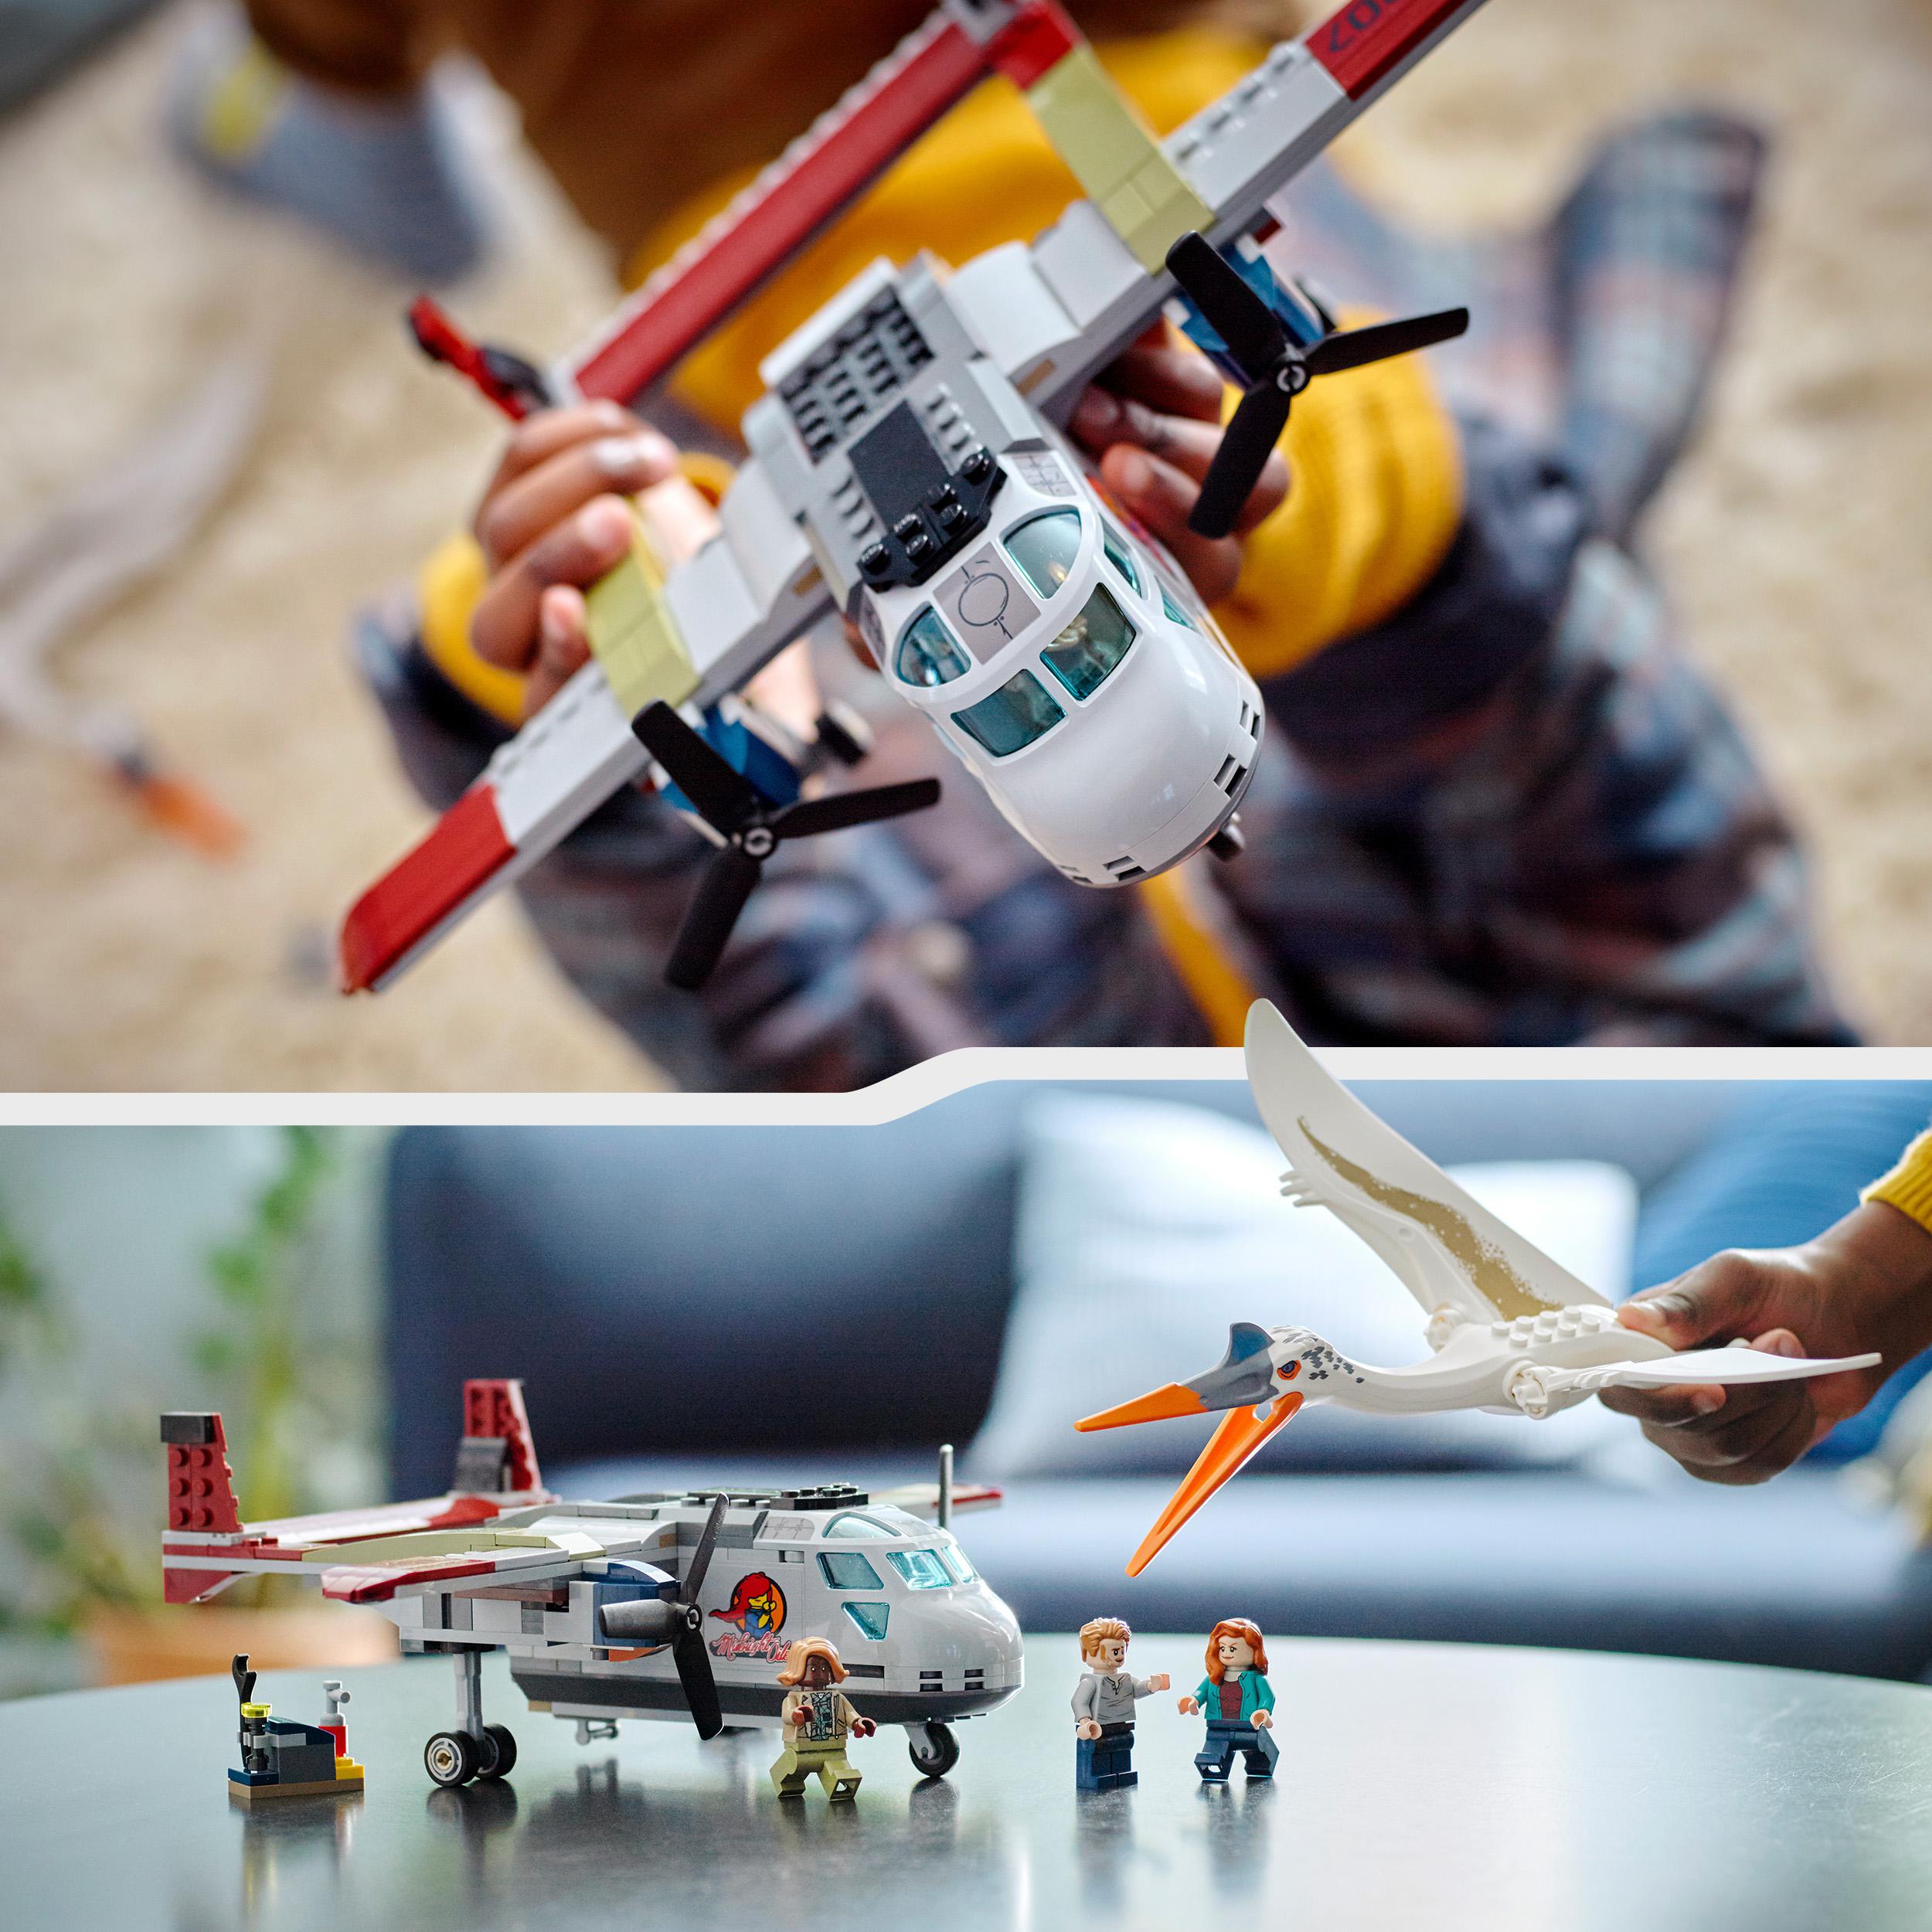 Lego jurassic world 76947 quetzalcoatlus: agguato aereo, giochi per bambini di 7+ anni con dinosauri giocattolo e minifigure - Jurassic World, LEGO JURASSIC WORLD, Lego